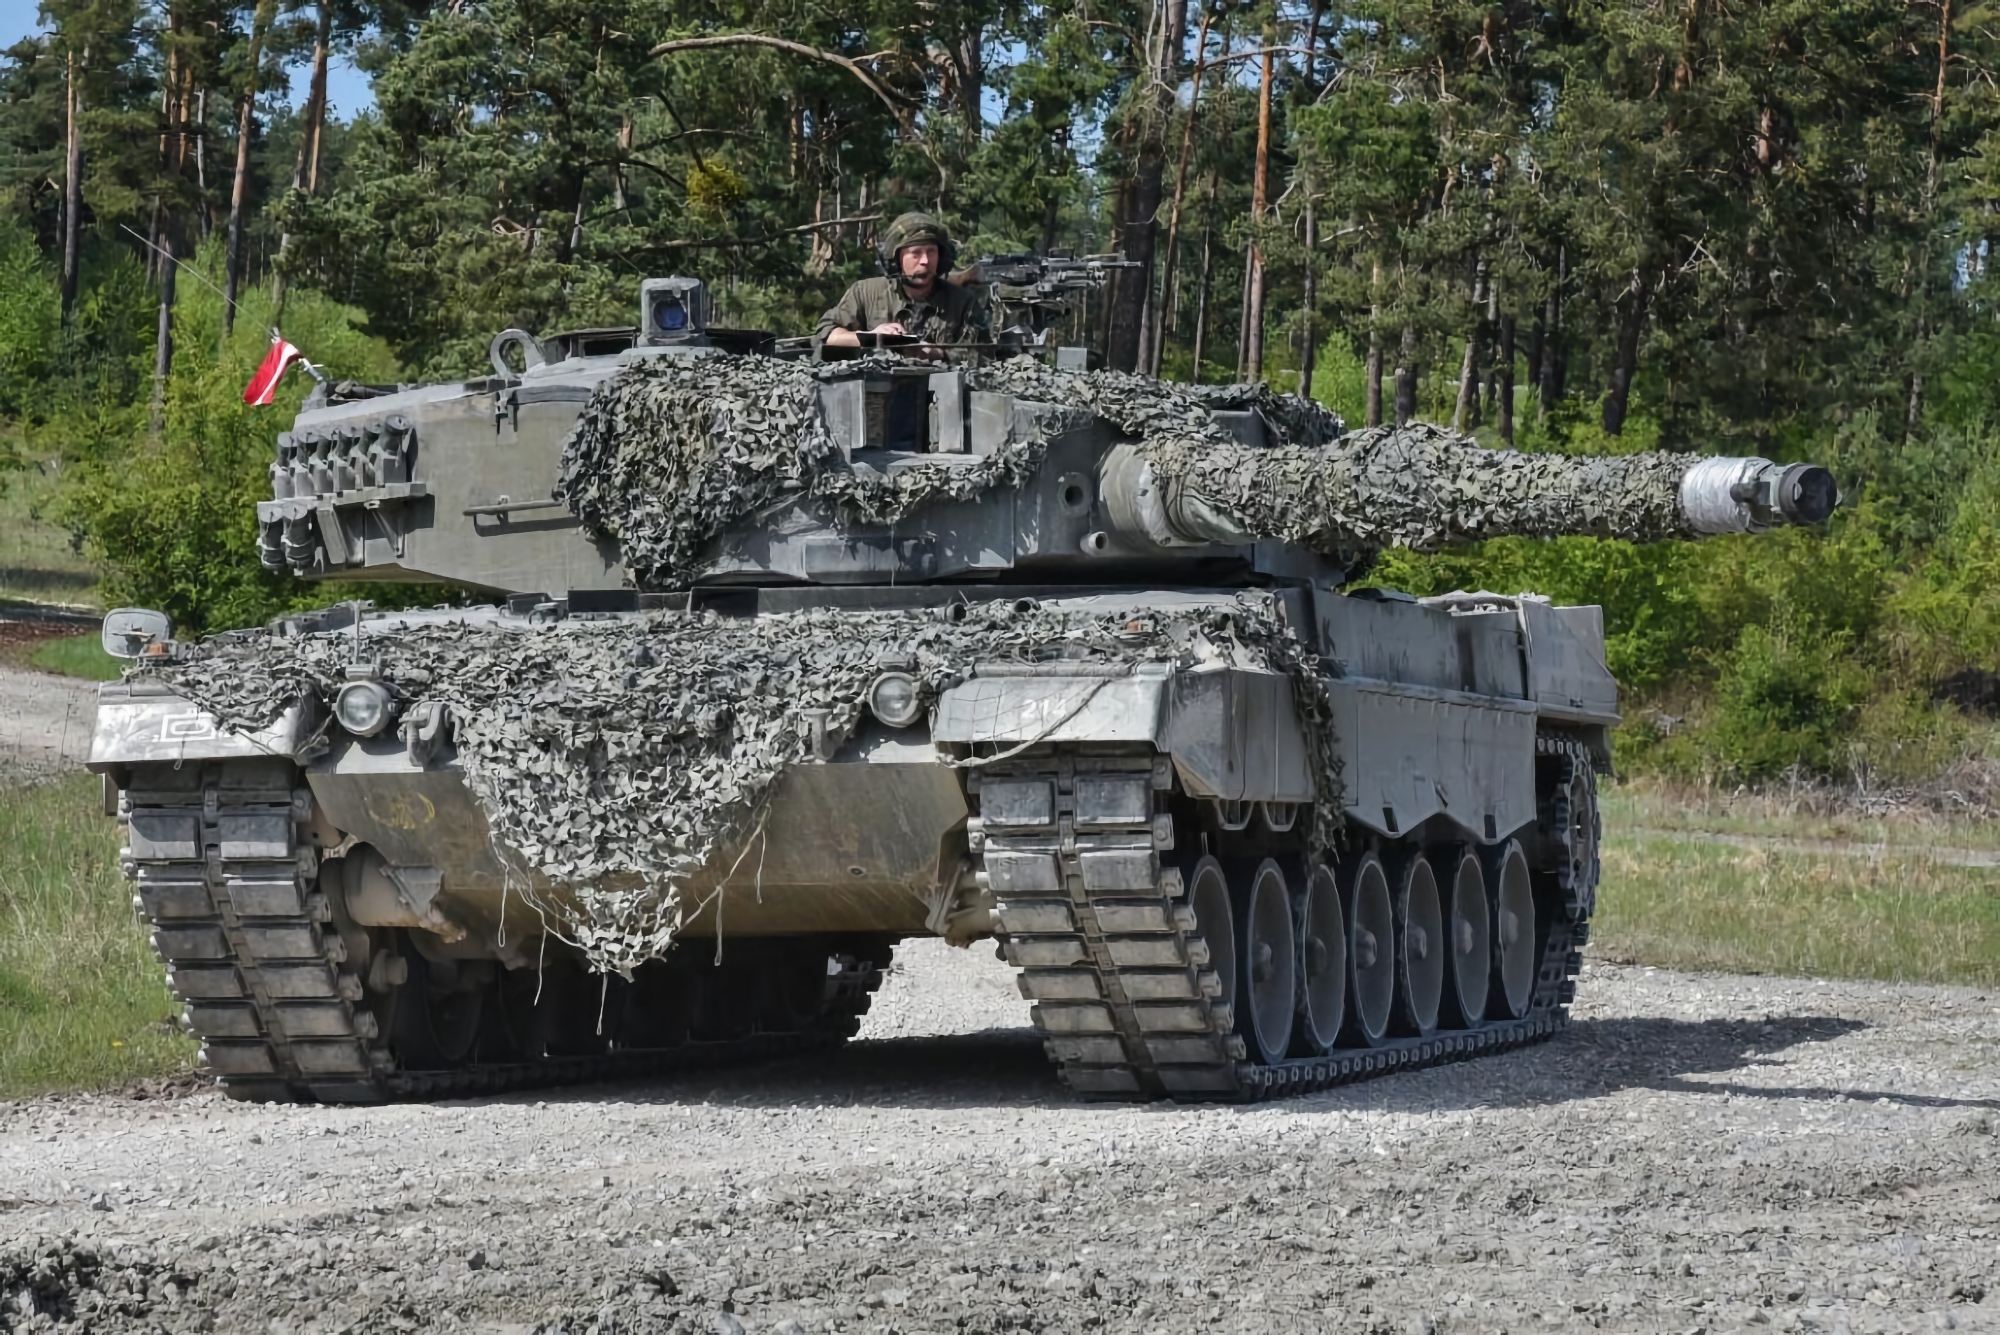 Le ministre allemand de la défense indique quand l'Ukraine recevra 14 chars Leopard 2